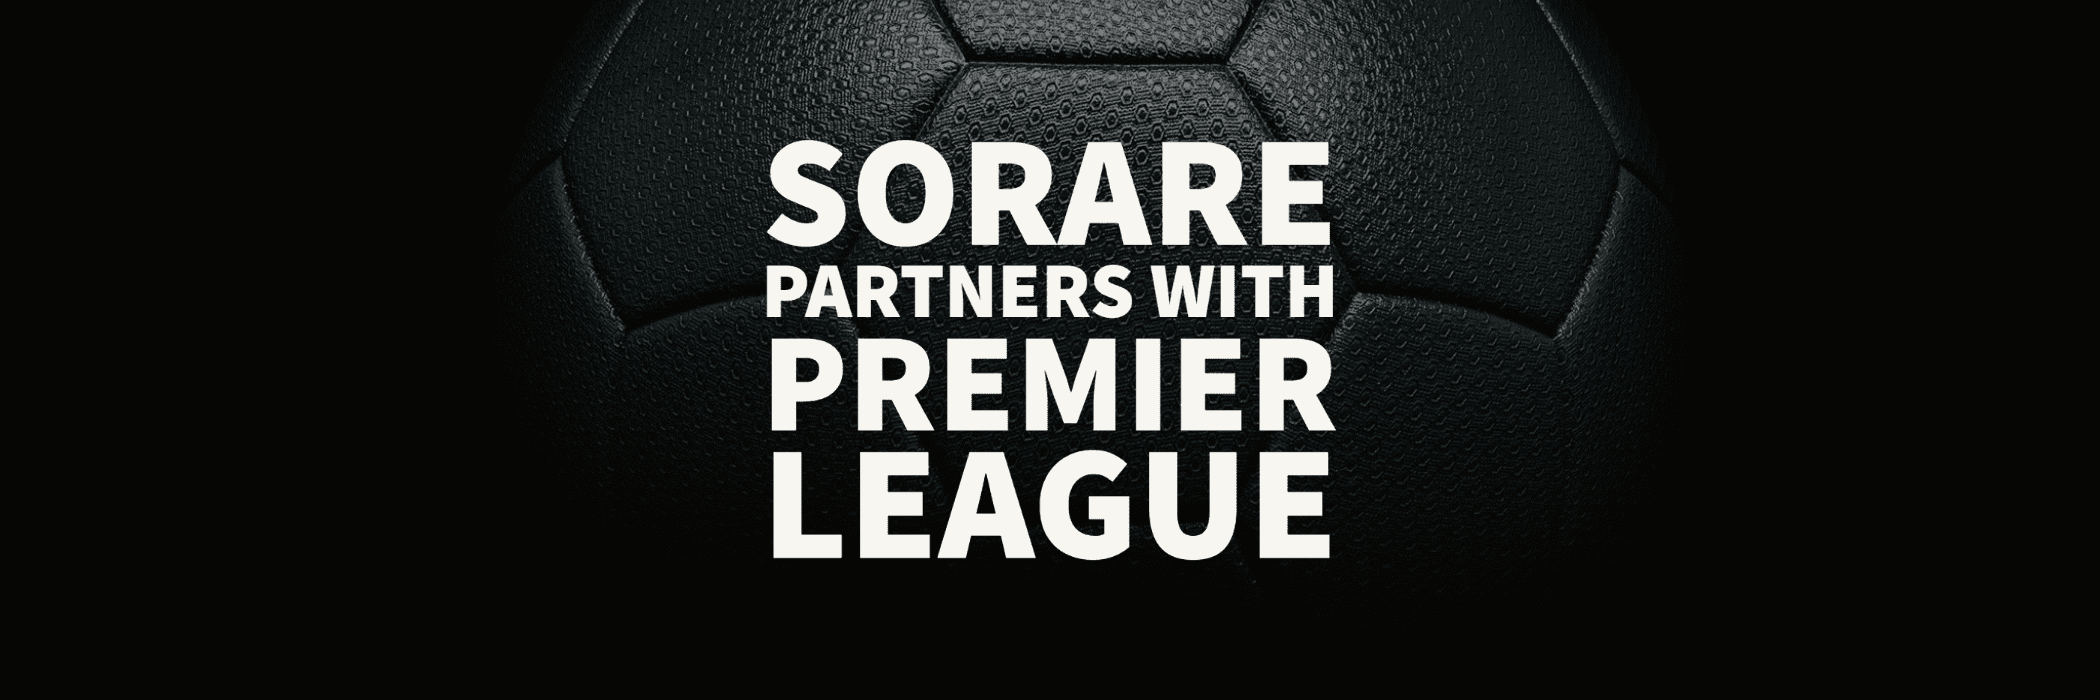 SORARE Partners with Premier League